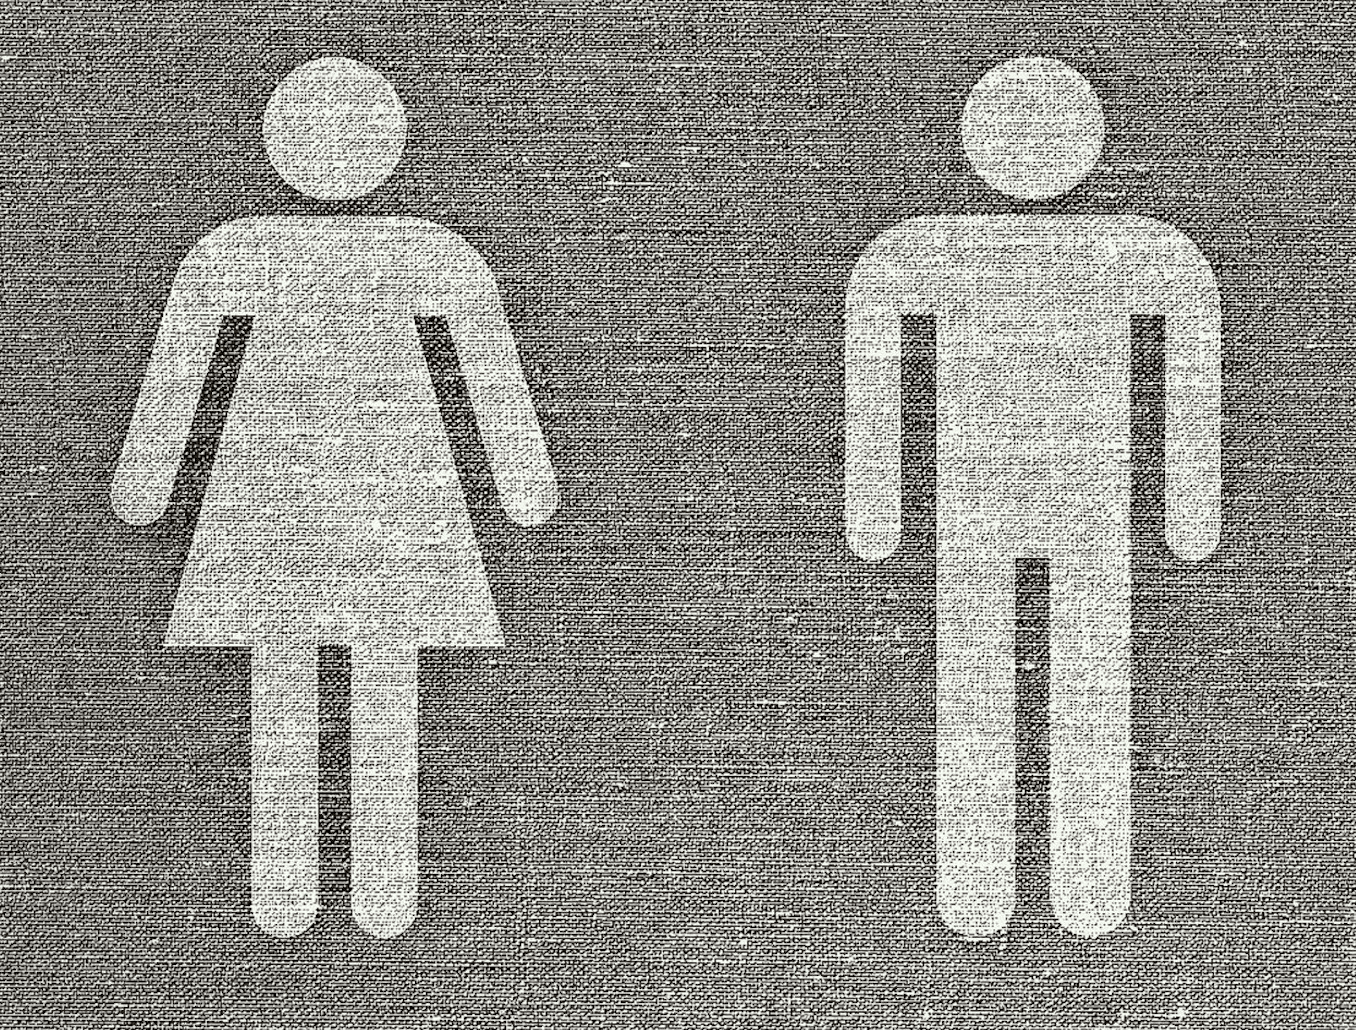 Kneppelhout advocaten arbeidsrecht - Gelijke beloning voor mannen en vrouwen: elke werkgever moet eraan geloven